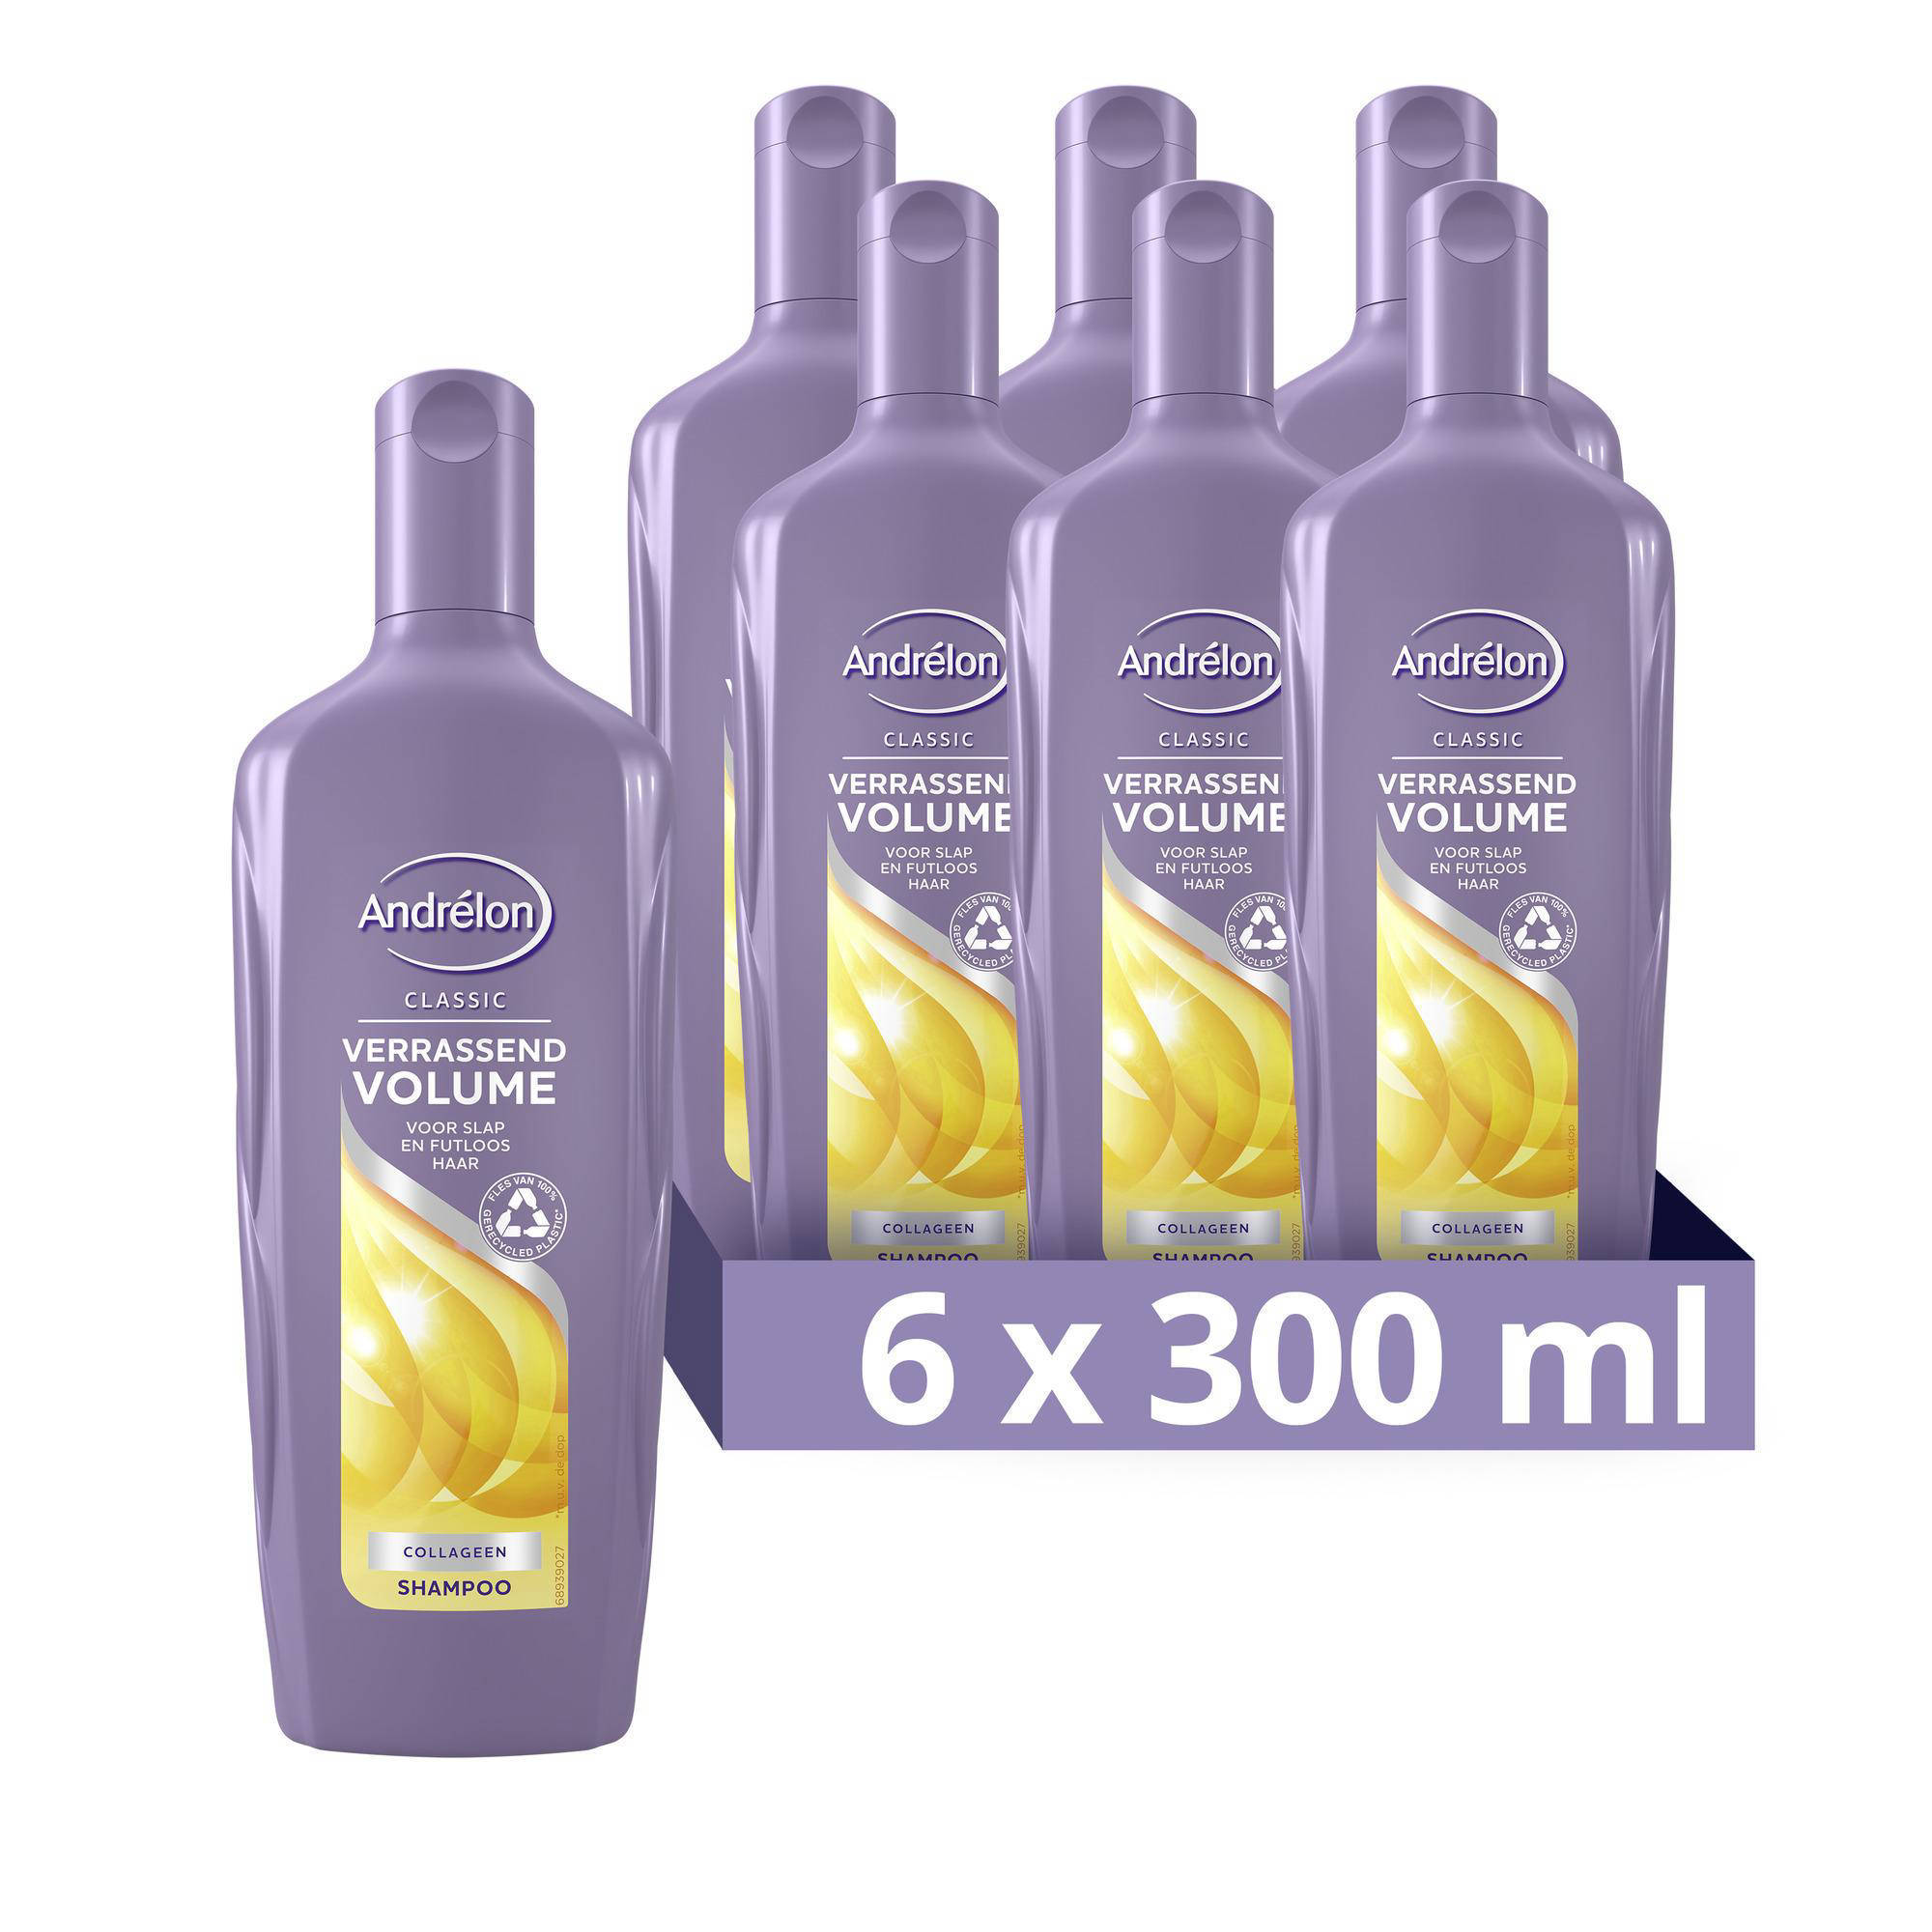 Andrelon Andrélon Classic Verrassend Volume shampoo 6 x 300 ml voordeelverpakking online kopen